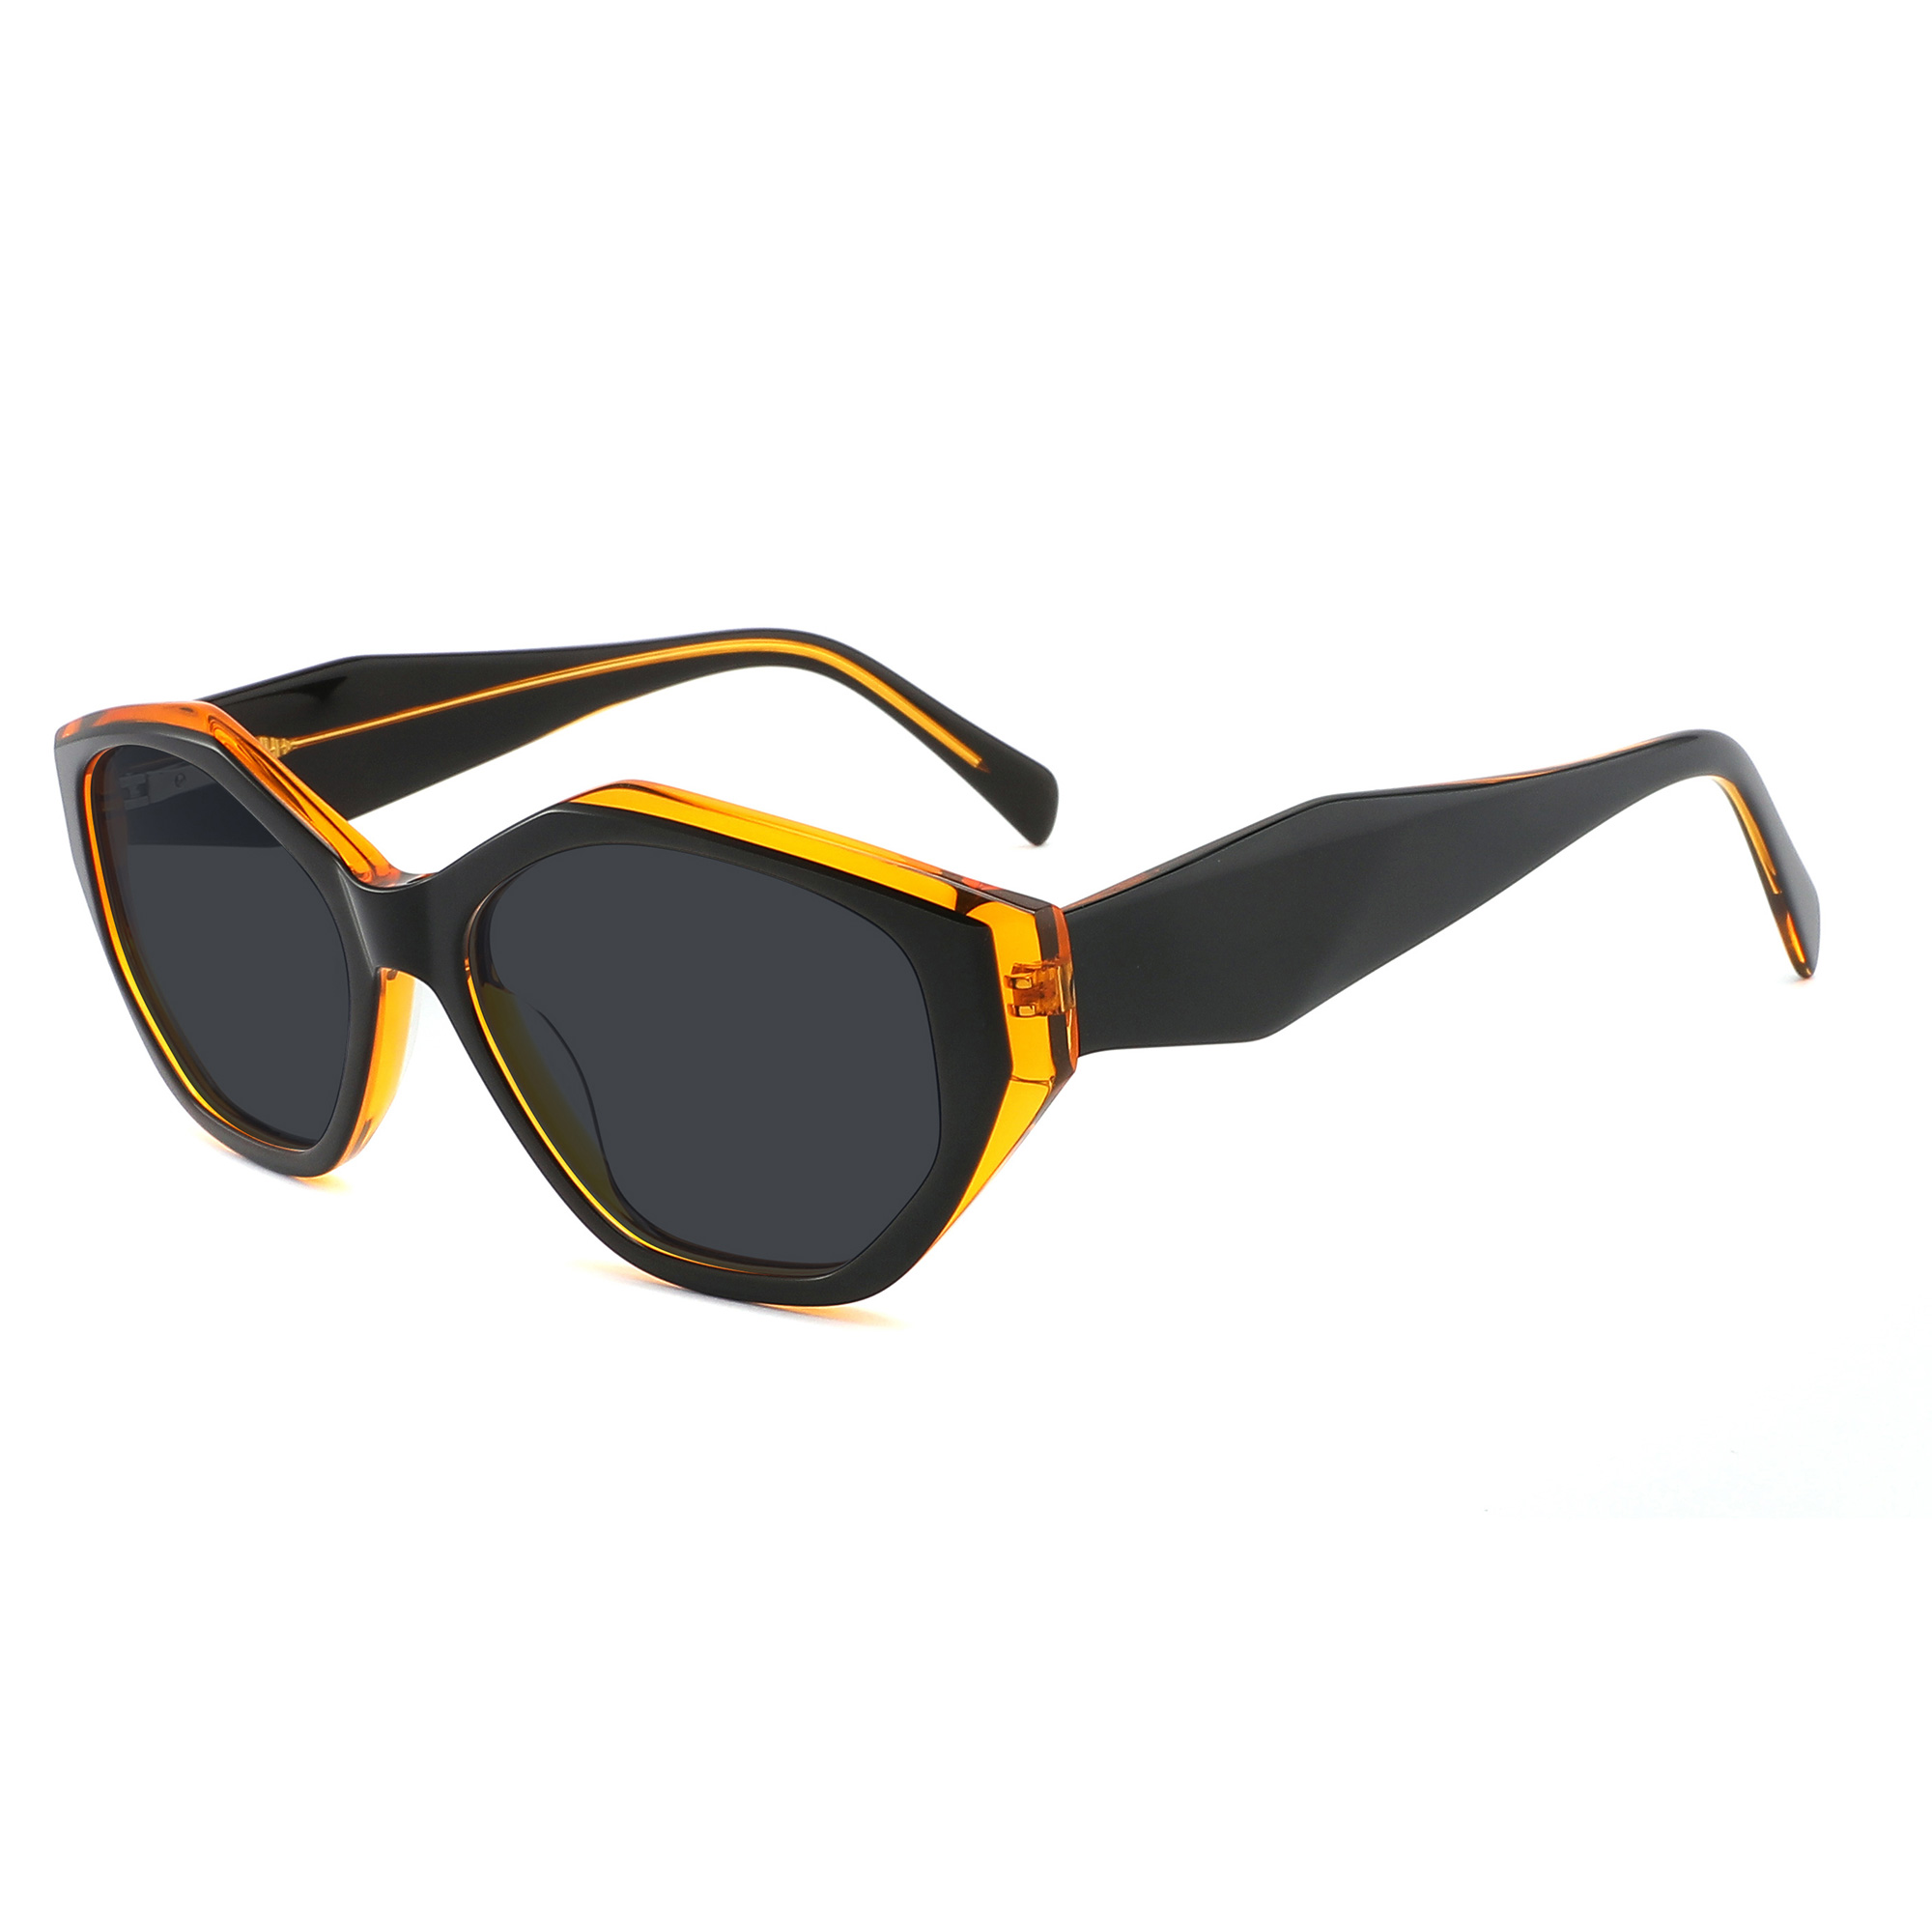 EUGENIA модные уличные дорожные черепаховые ацетатные солнцезащитные очки для женщин, оптовая продажа, женские солнцезащитные очки, Прямая доставка